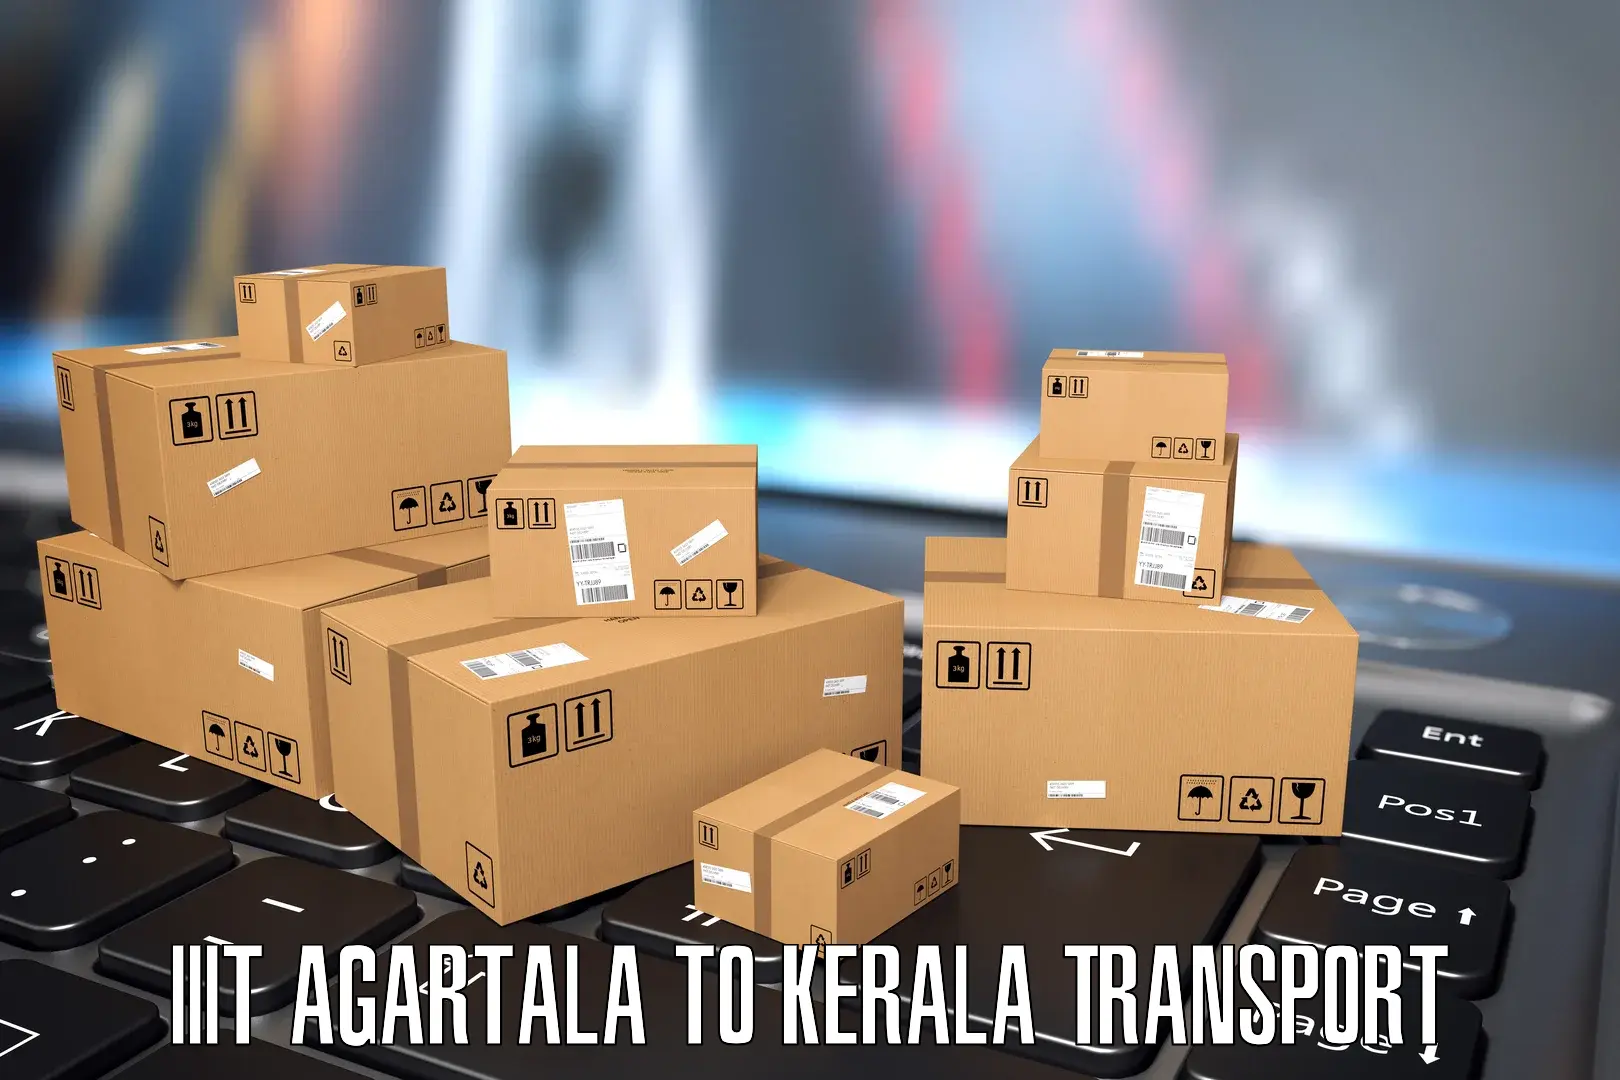 Daily transport service IIIT Agartala to Kalluvathukkal